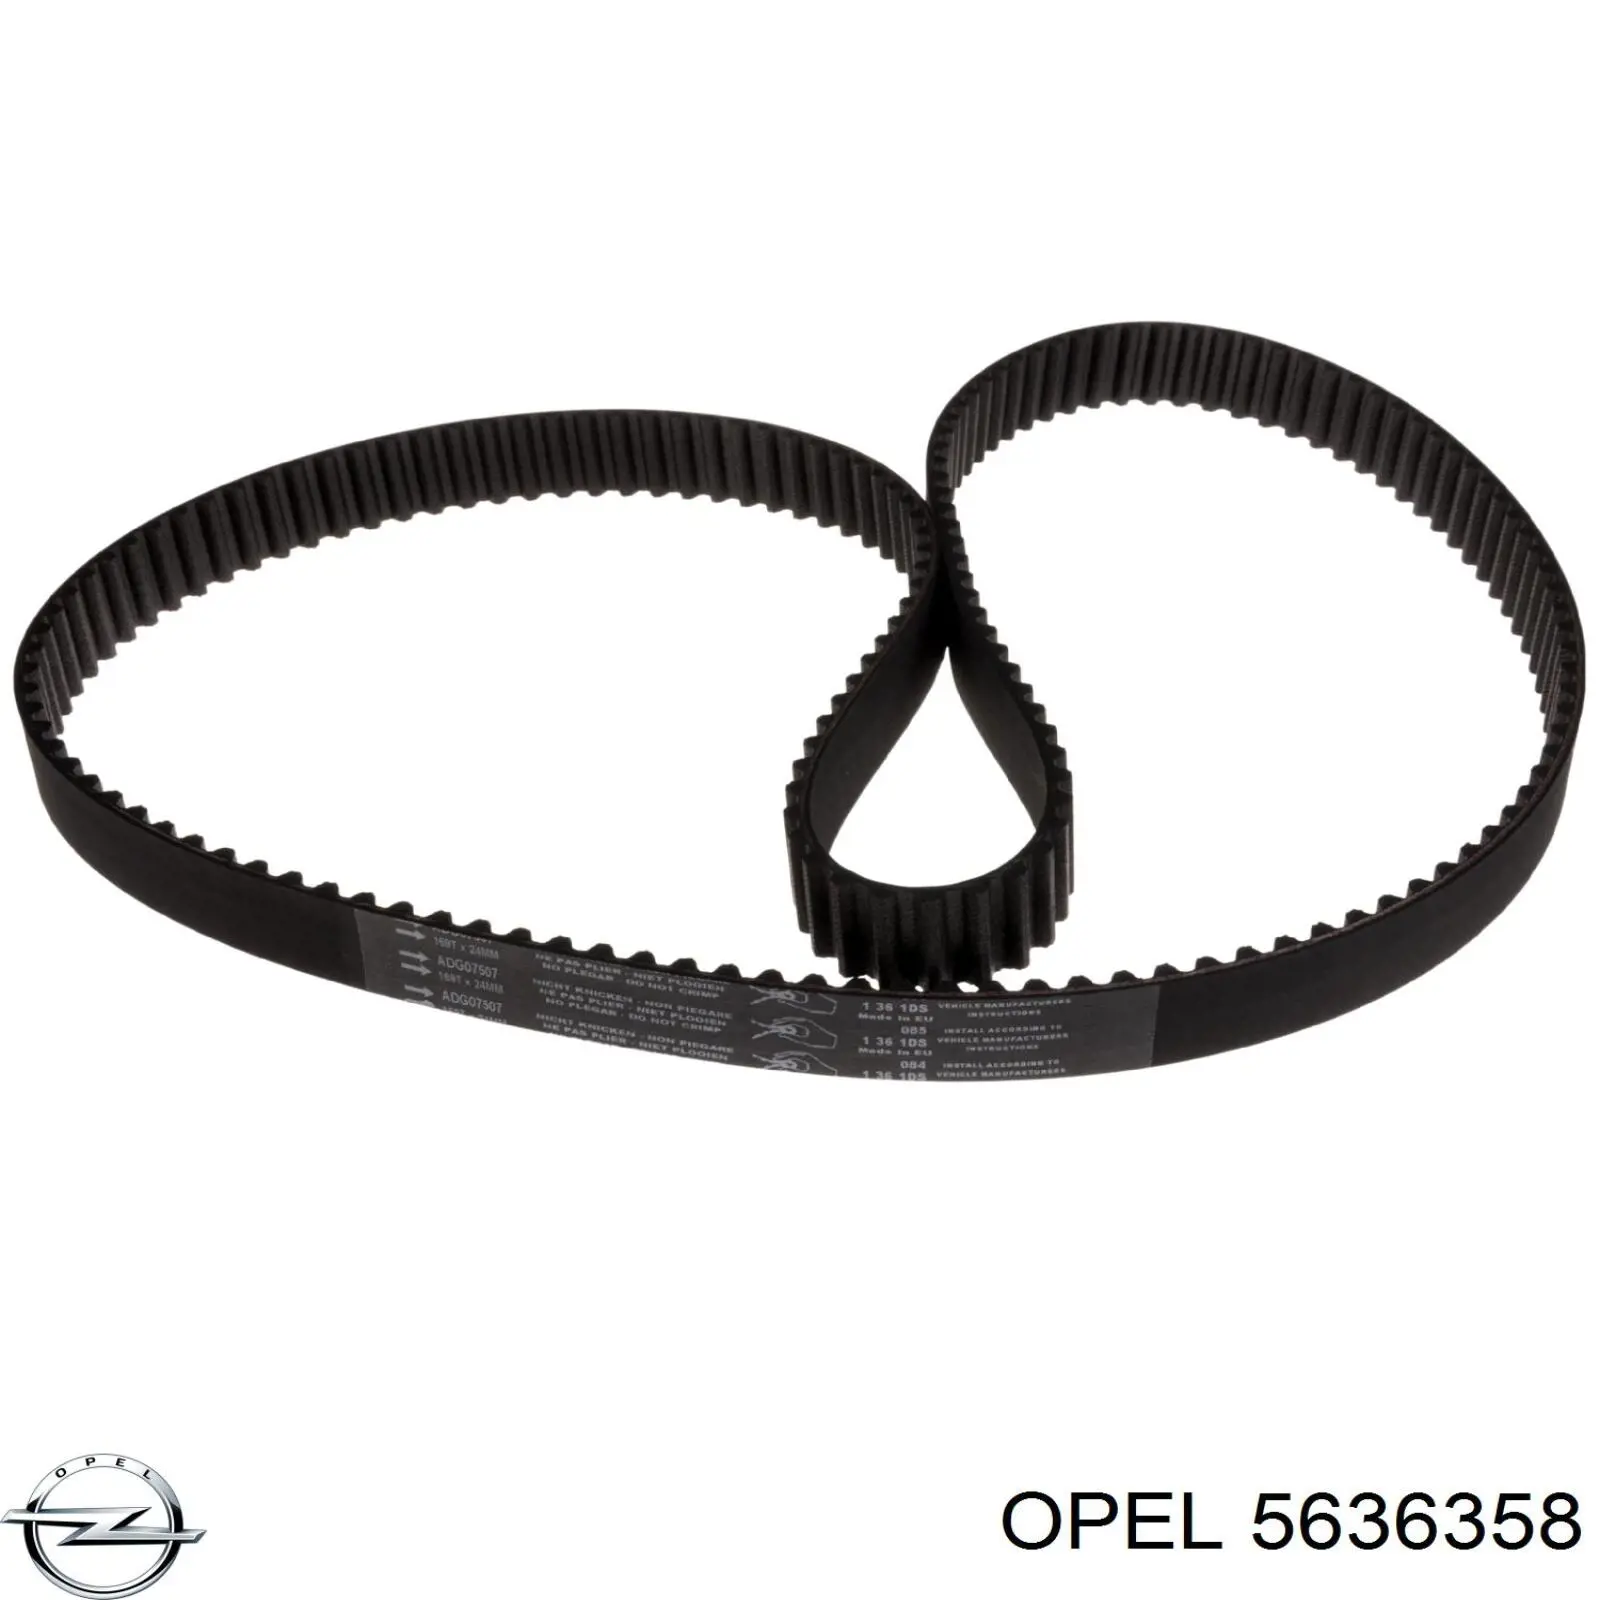 5636358 Opel correa distribución